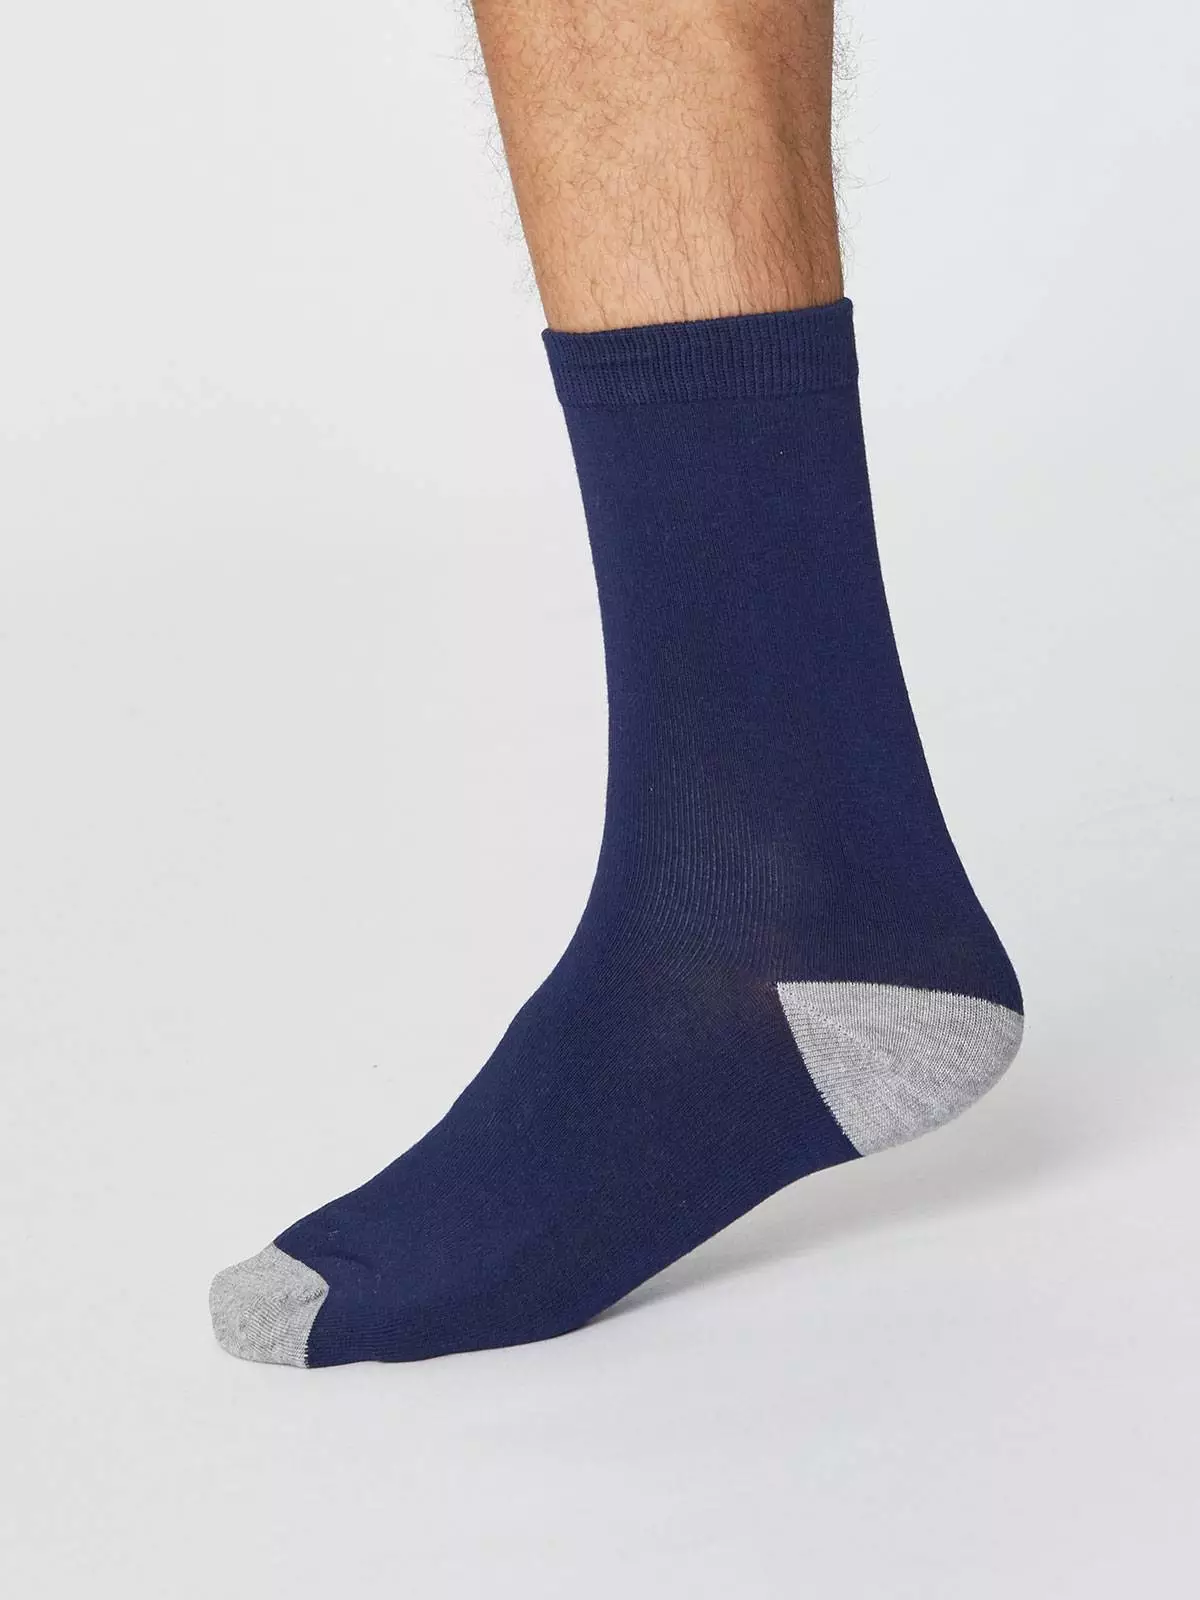 Herren-Socken Modell: Solid Jack